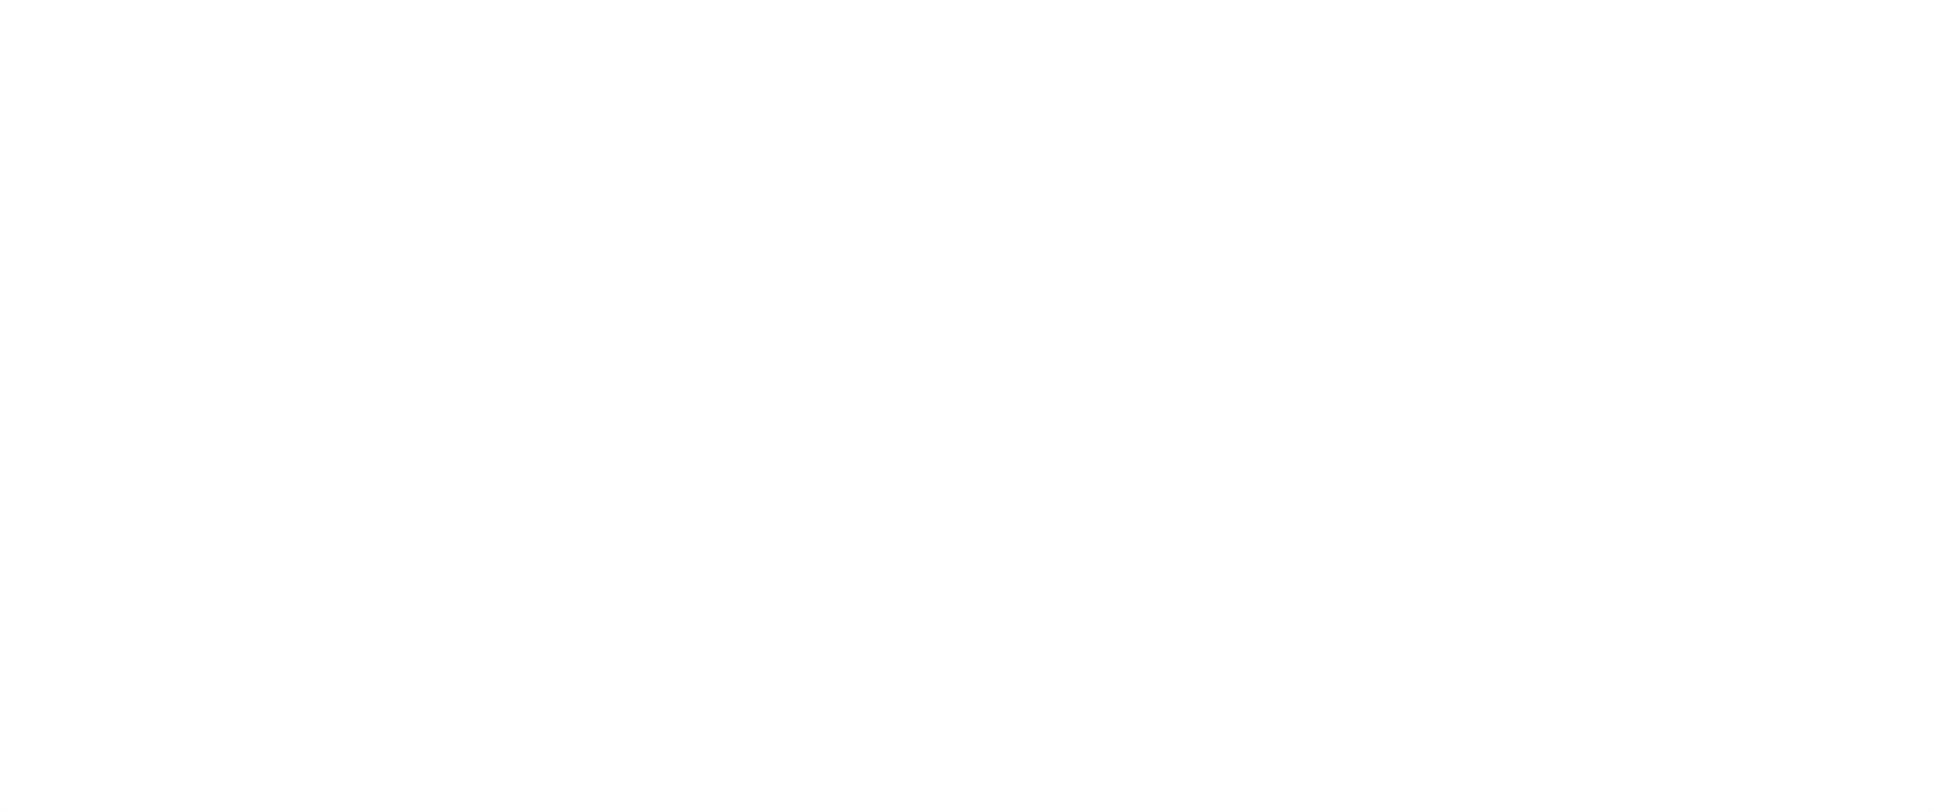 Logo von DJ funXbeat aus Loitsche bei Magdeburg in weiß